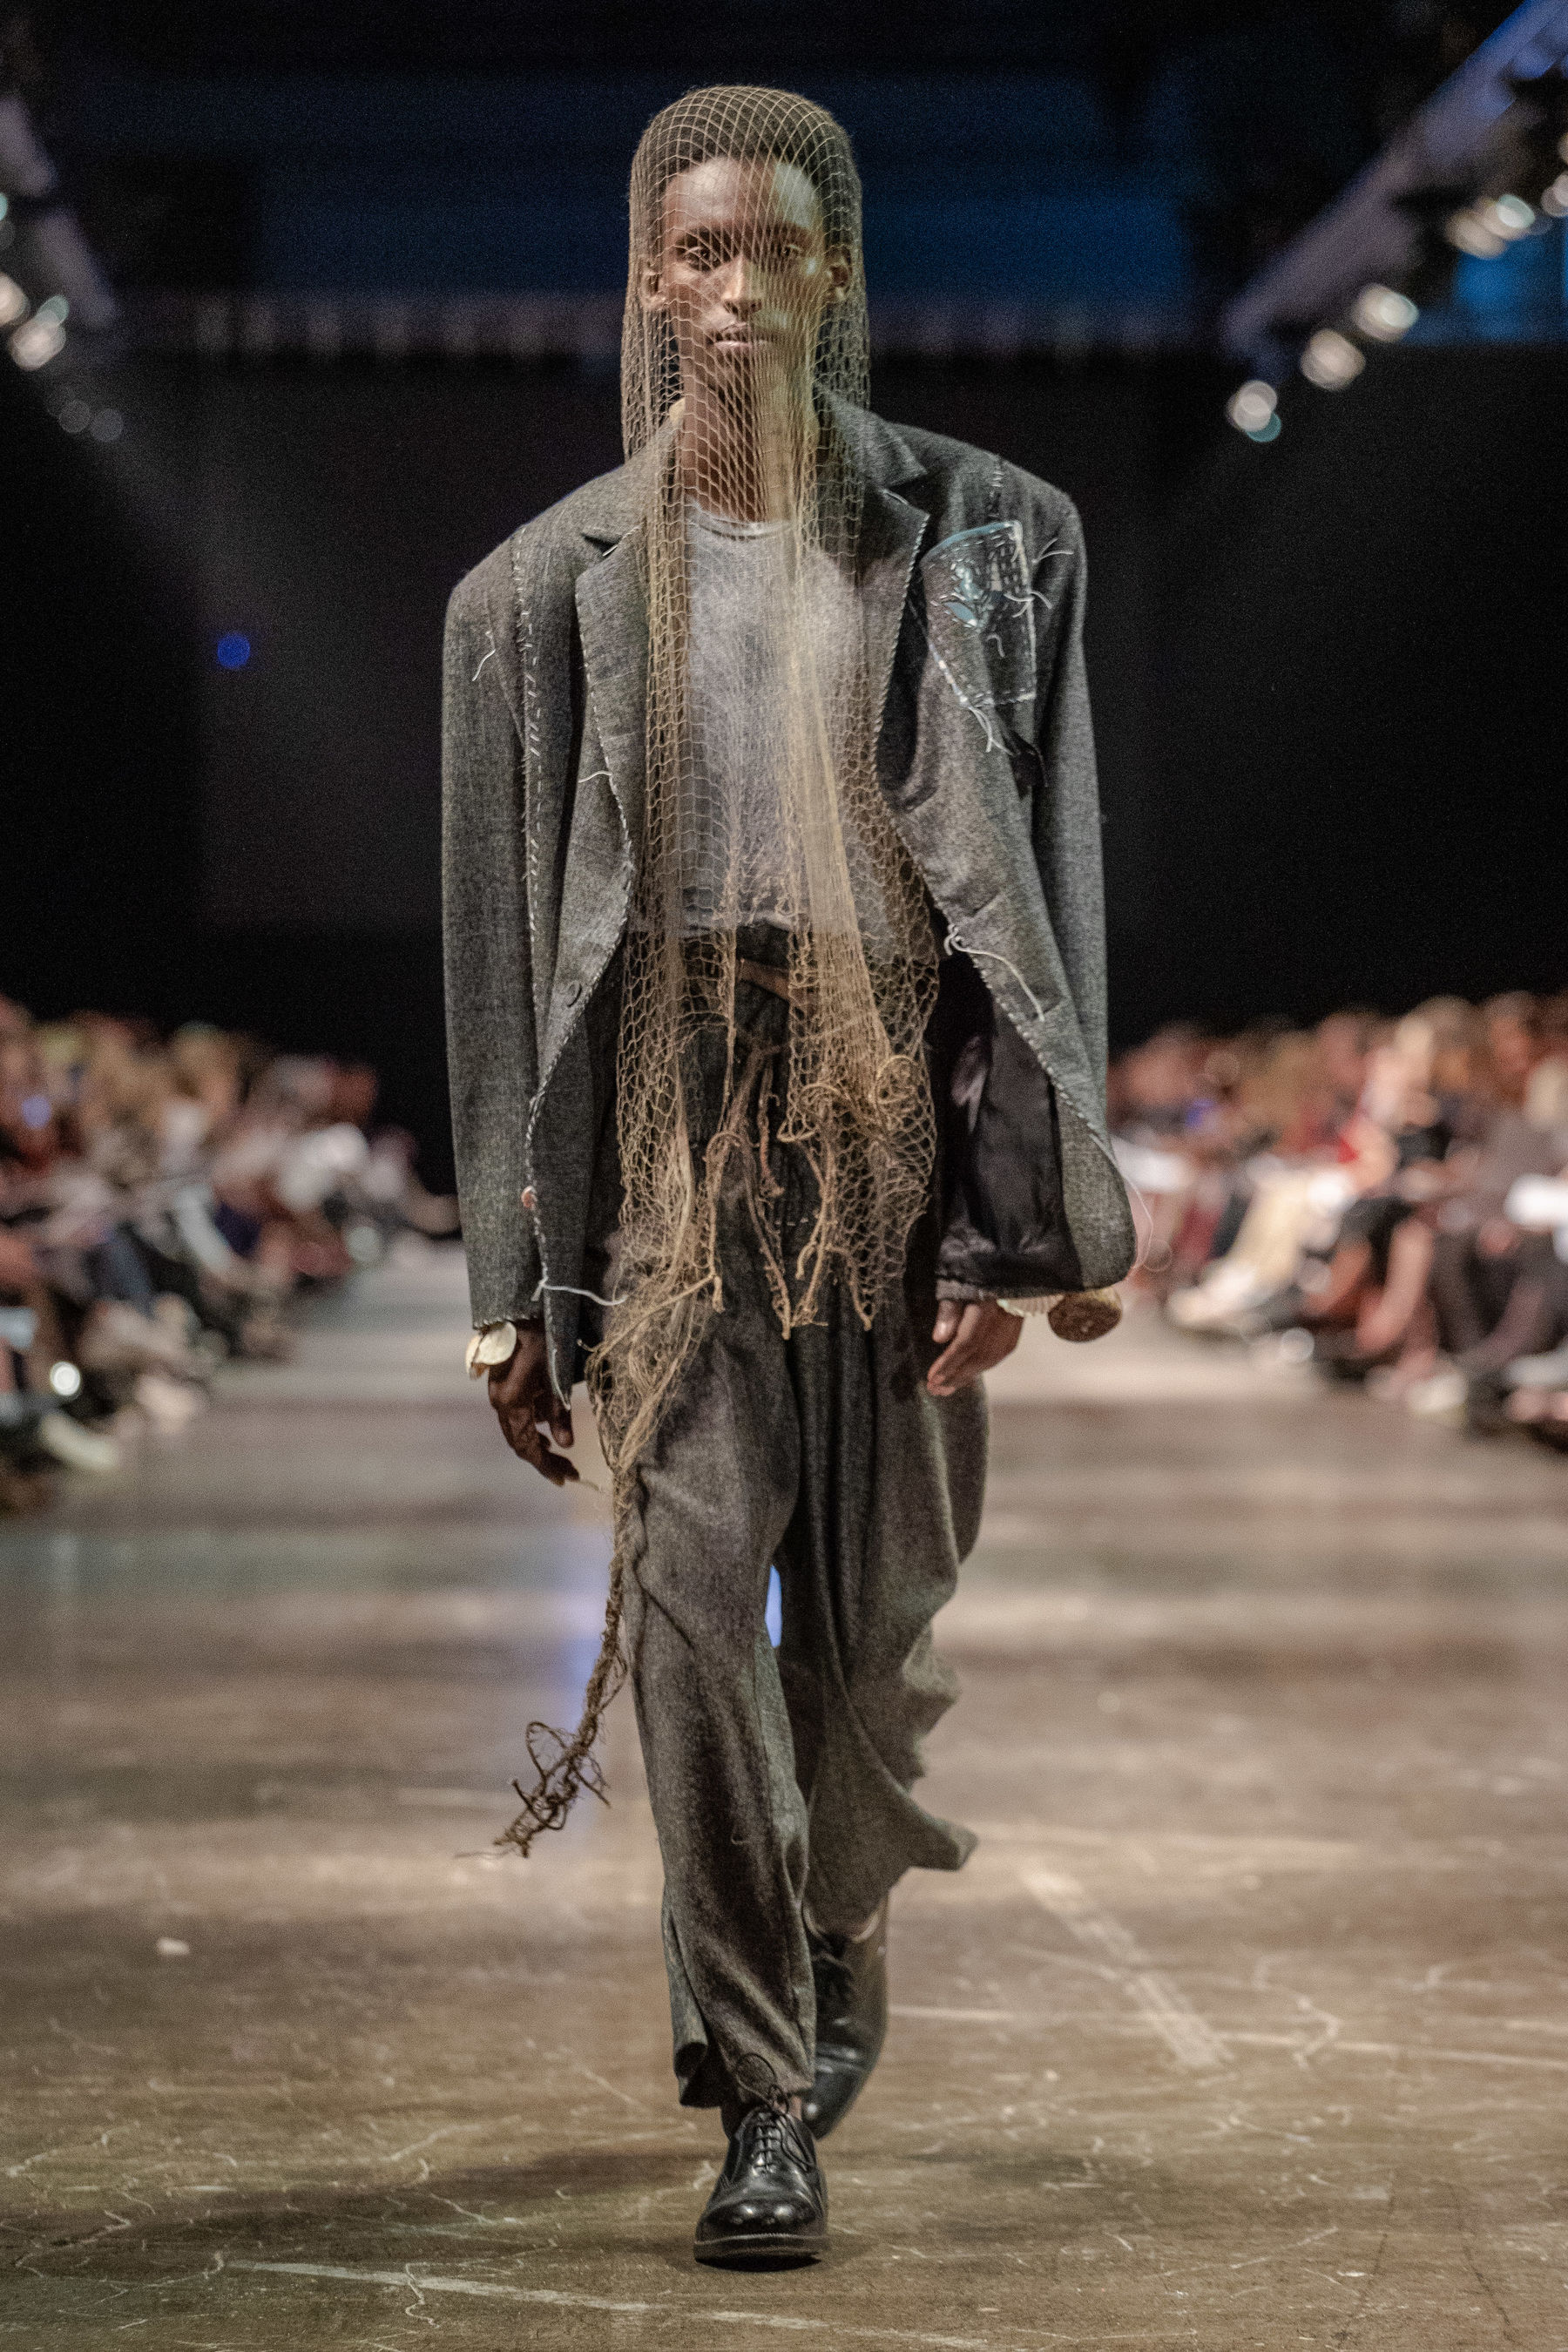 Model walking down catwalk in garment with fishing net